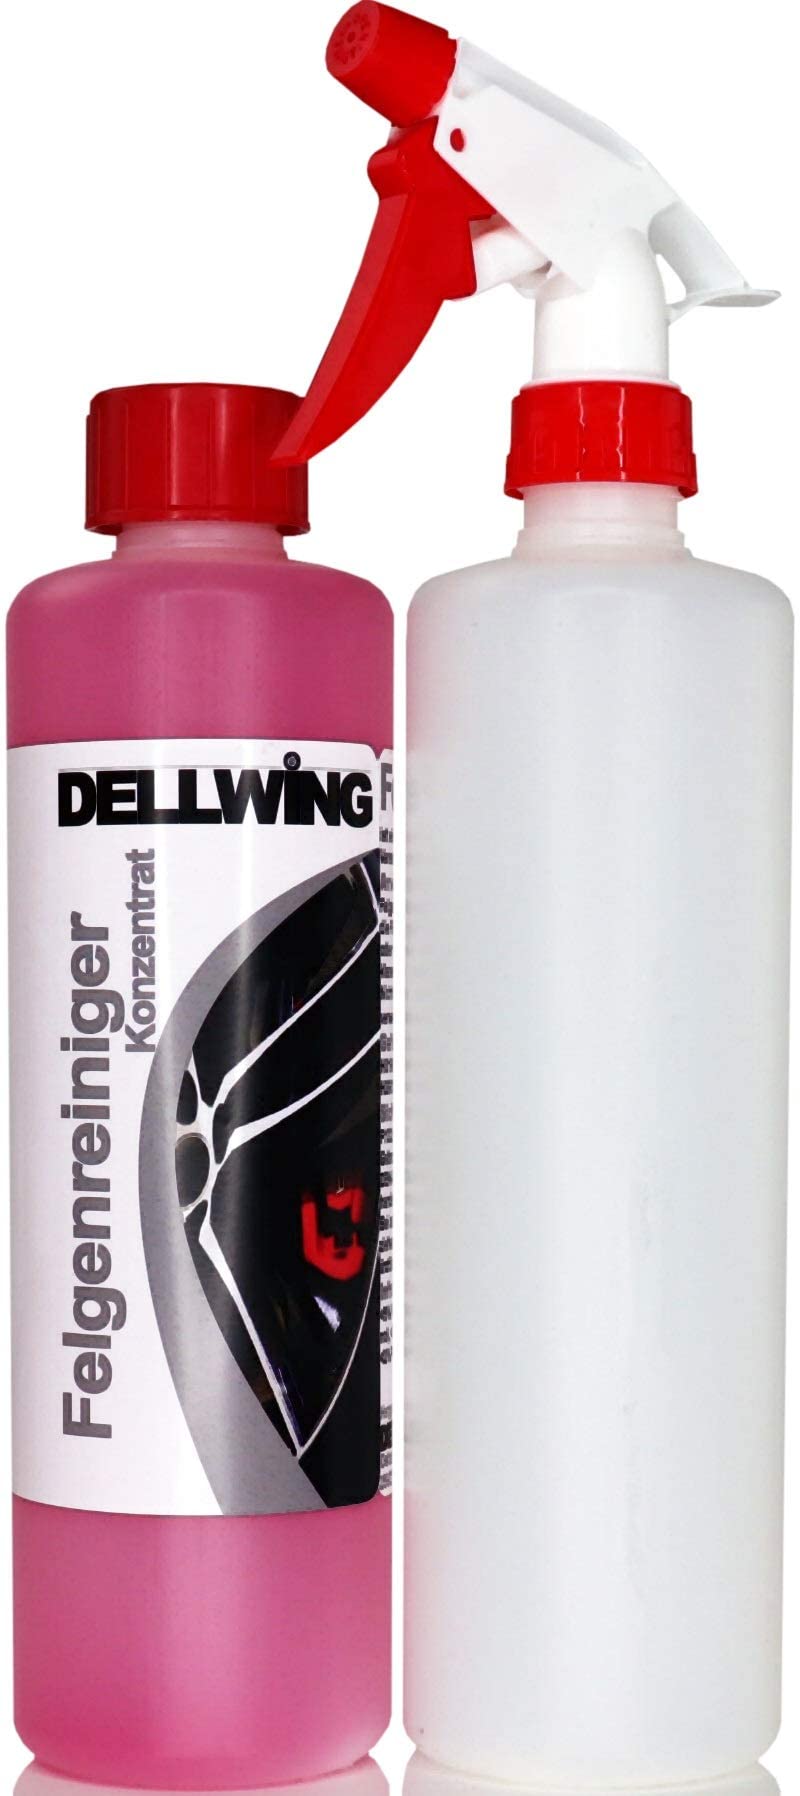 DELLWING Felgenreiniger Konzentrat 500 ml + 500 ml Sprühflasche - Premium Felgenreiniger selbst für eingebrannte Verschmutzungen - Hoch alkalisch von DELLWING